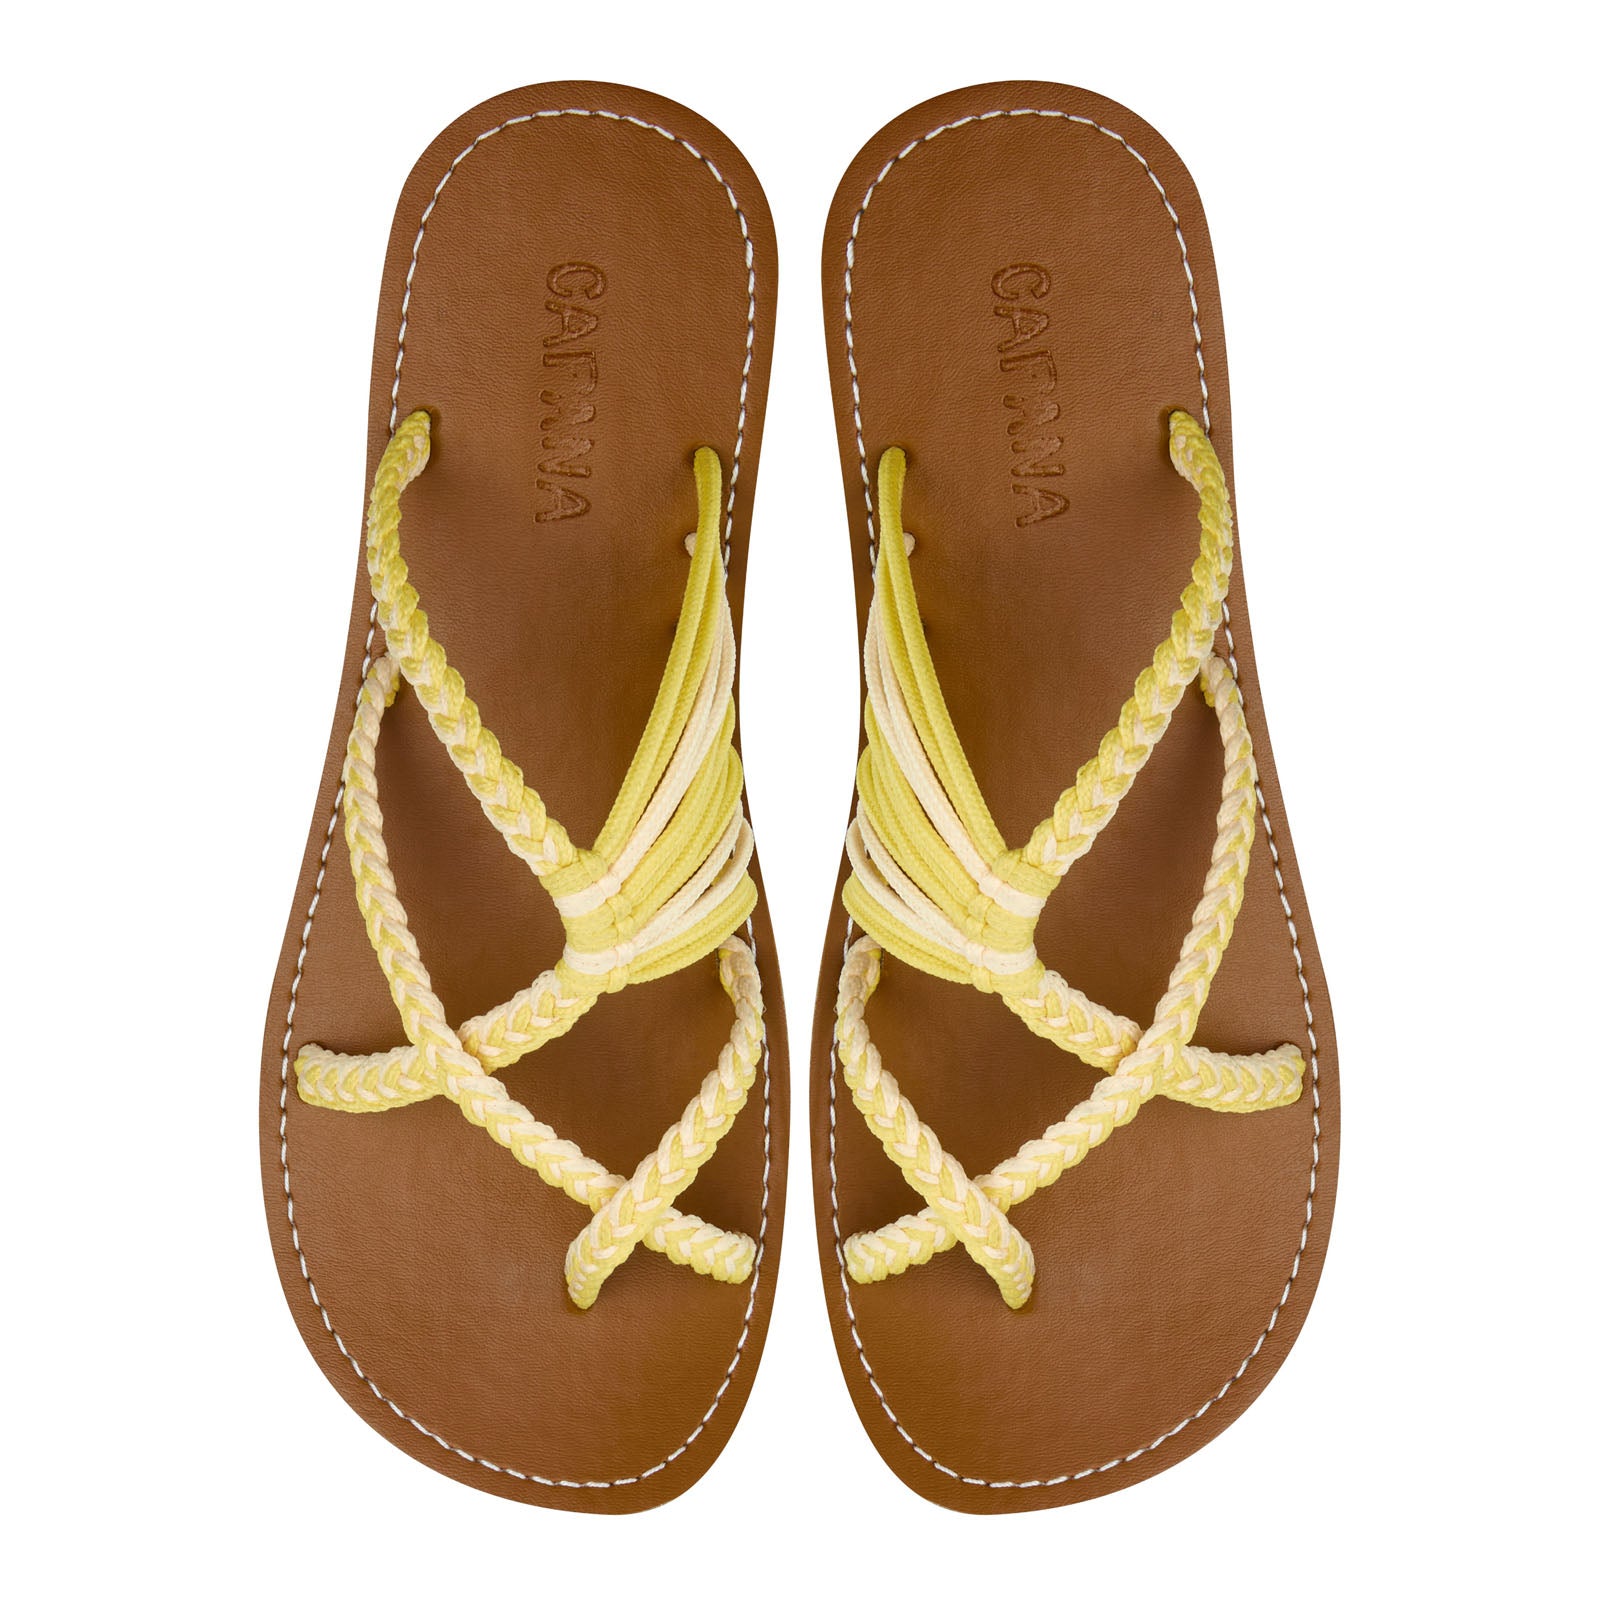 Oceanbliss Yellow Cream Rope Sandals Butter Yellow Crisscross design Flat Handmade sandals for women